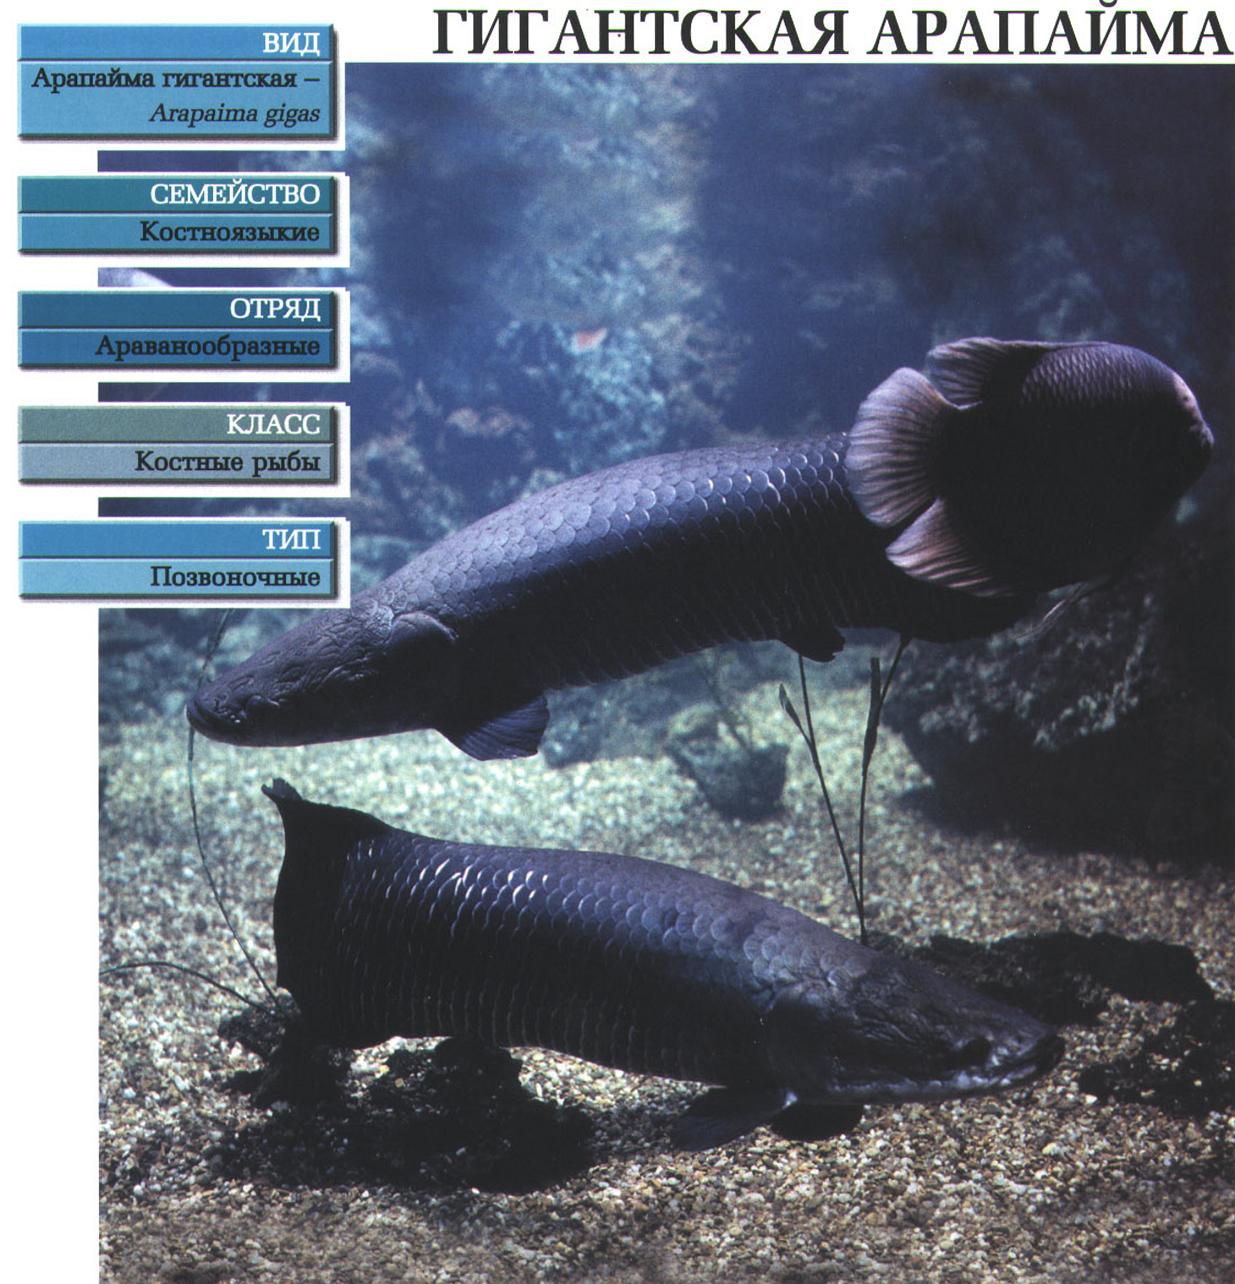 Гигантская арапайма (Arapaima gigas) - одна из крупнейших пресноводных рыб. Где живёт, чем питается, сколько весит?